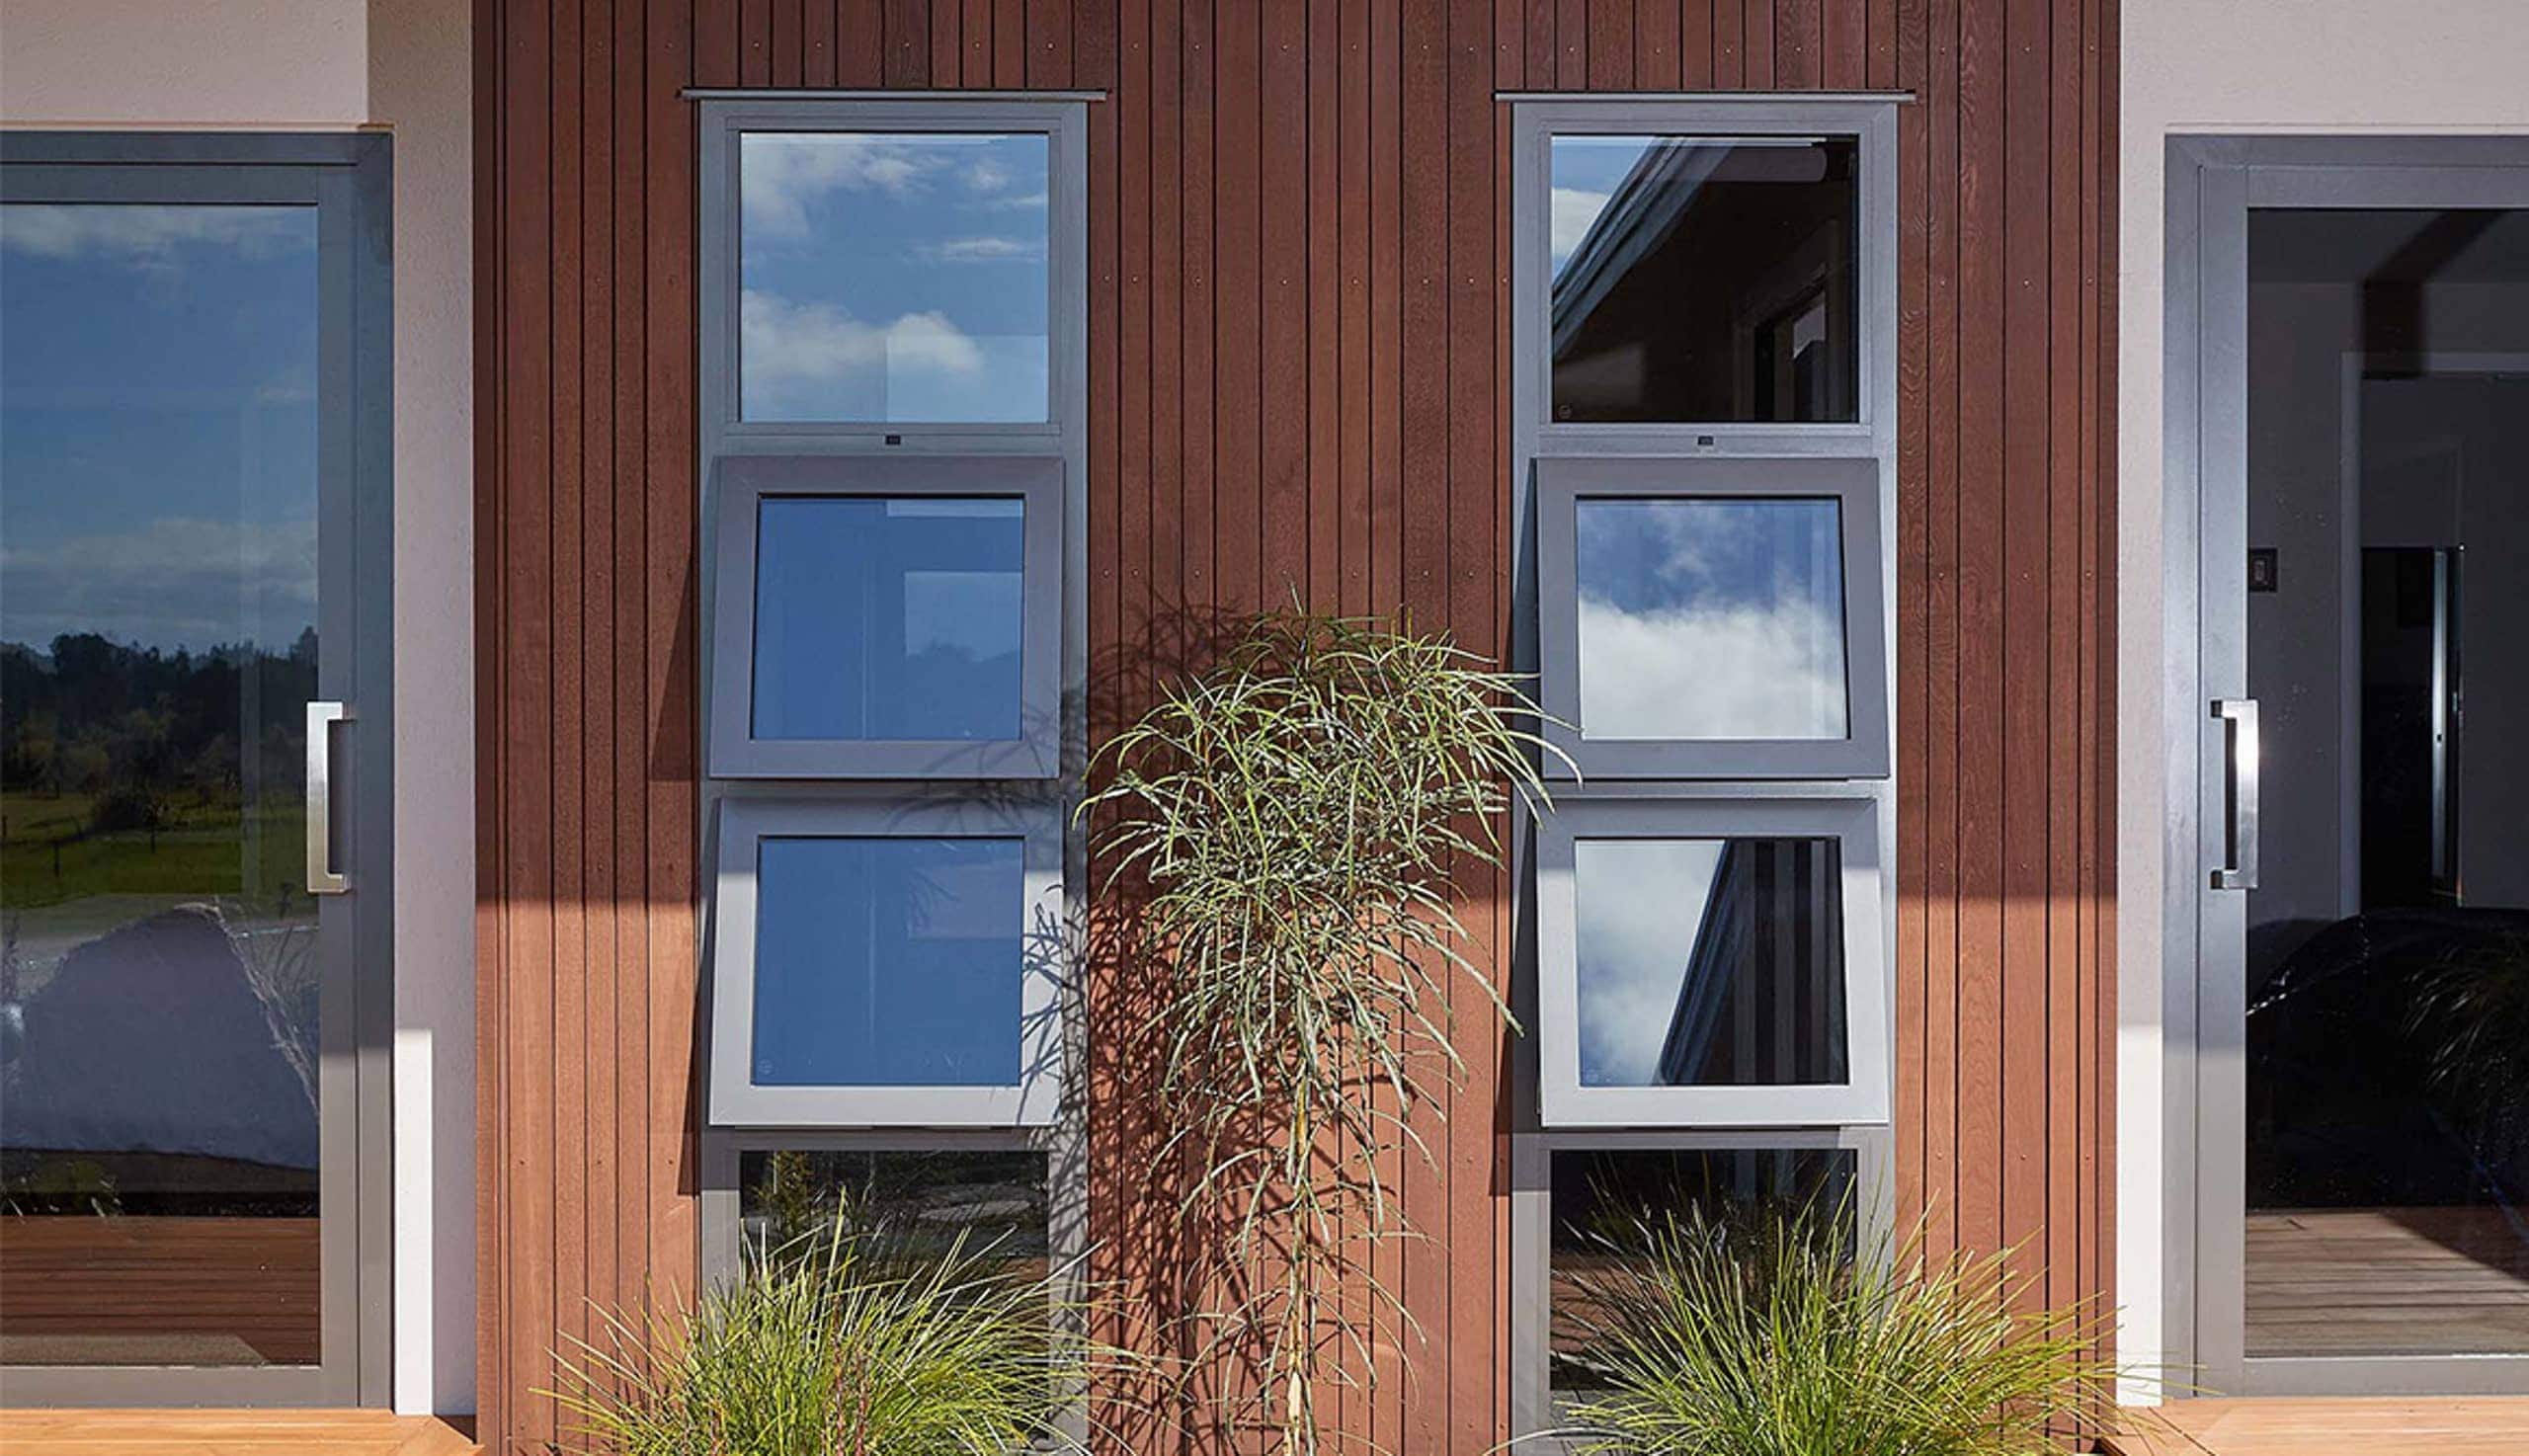 Hoouse exterior showing aluminium awning windows